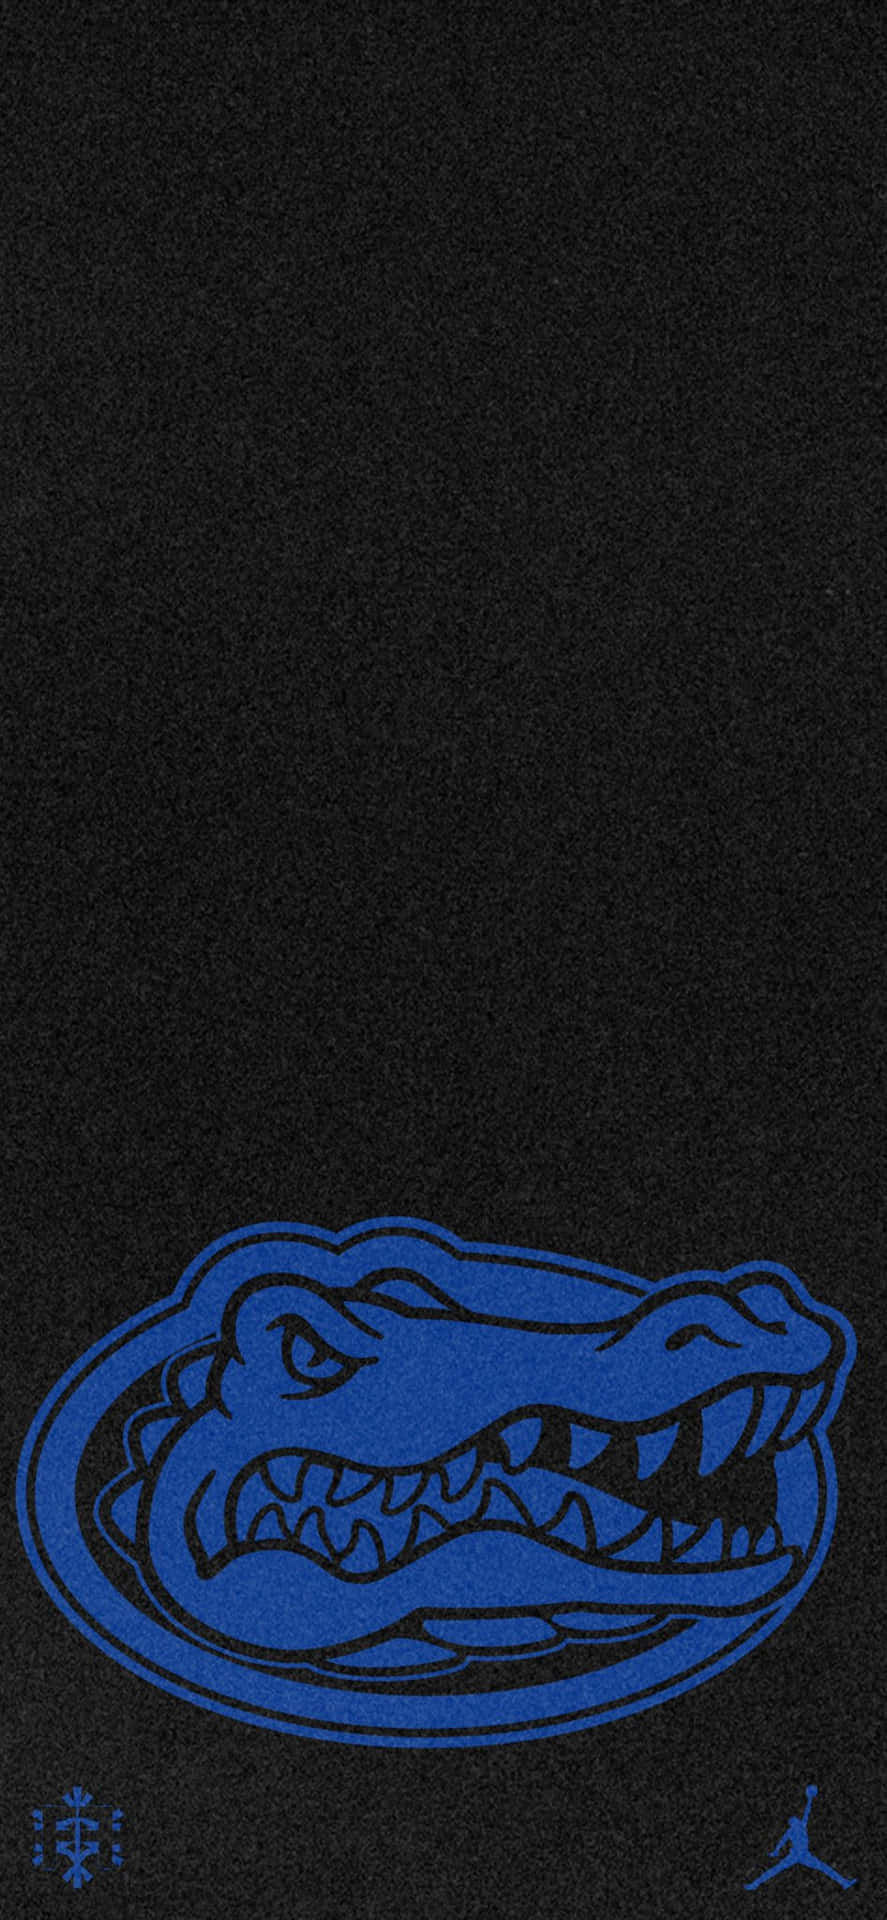 Einschwarzes Und Blaues Krokodil-logo Auf Einem Schwarzen Hintergrund. Wallpaper